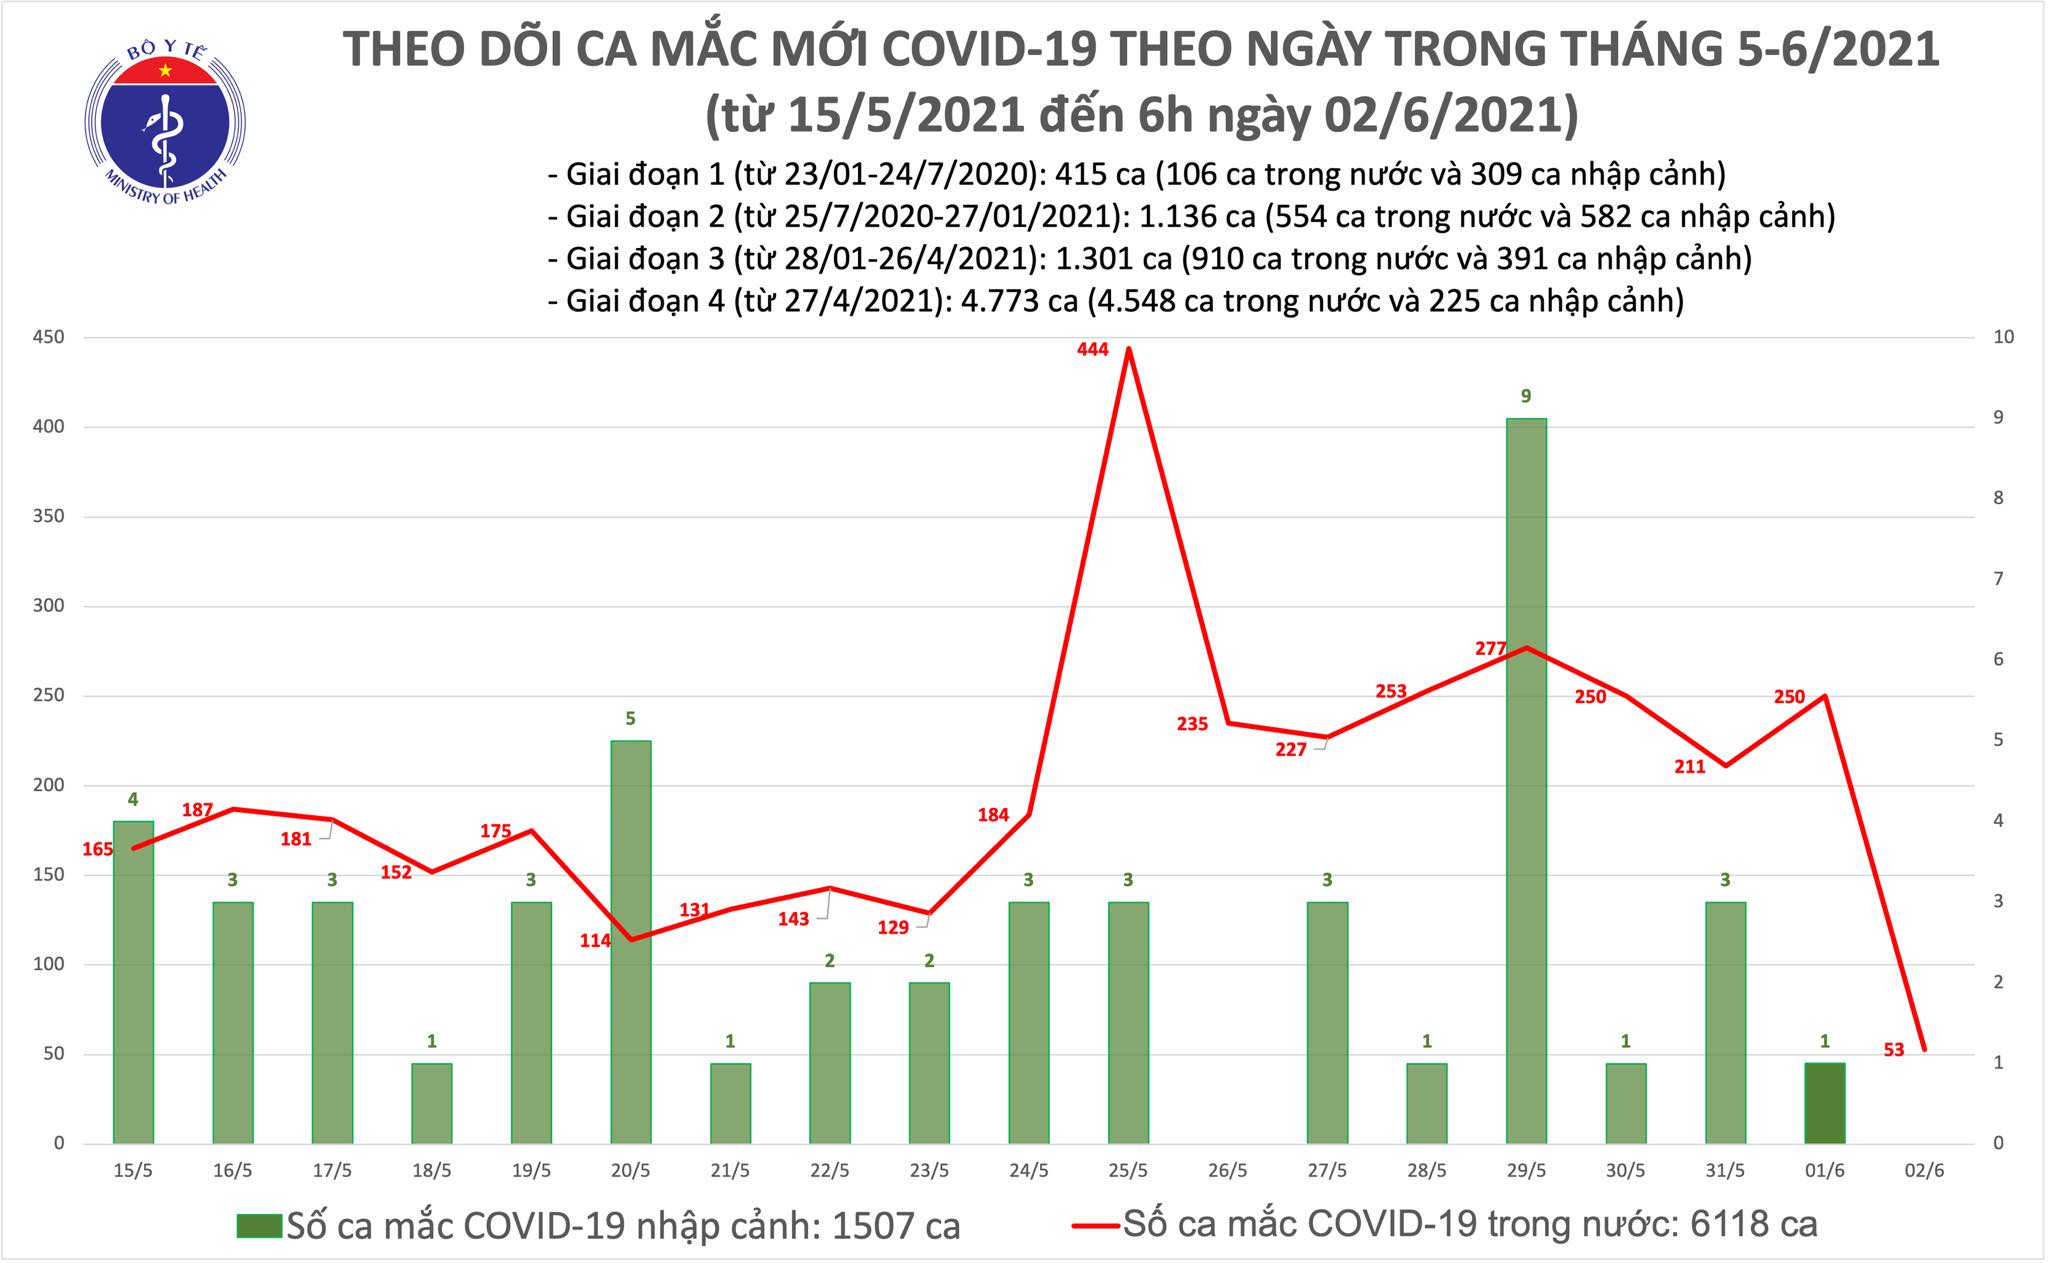 Sáng 2/6: Thêm 53 ca mắc COVID-19 trong nước, Bắc Giang và Bắc Ninh chiếm 51 ca 